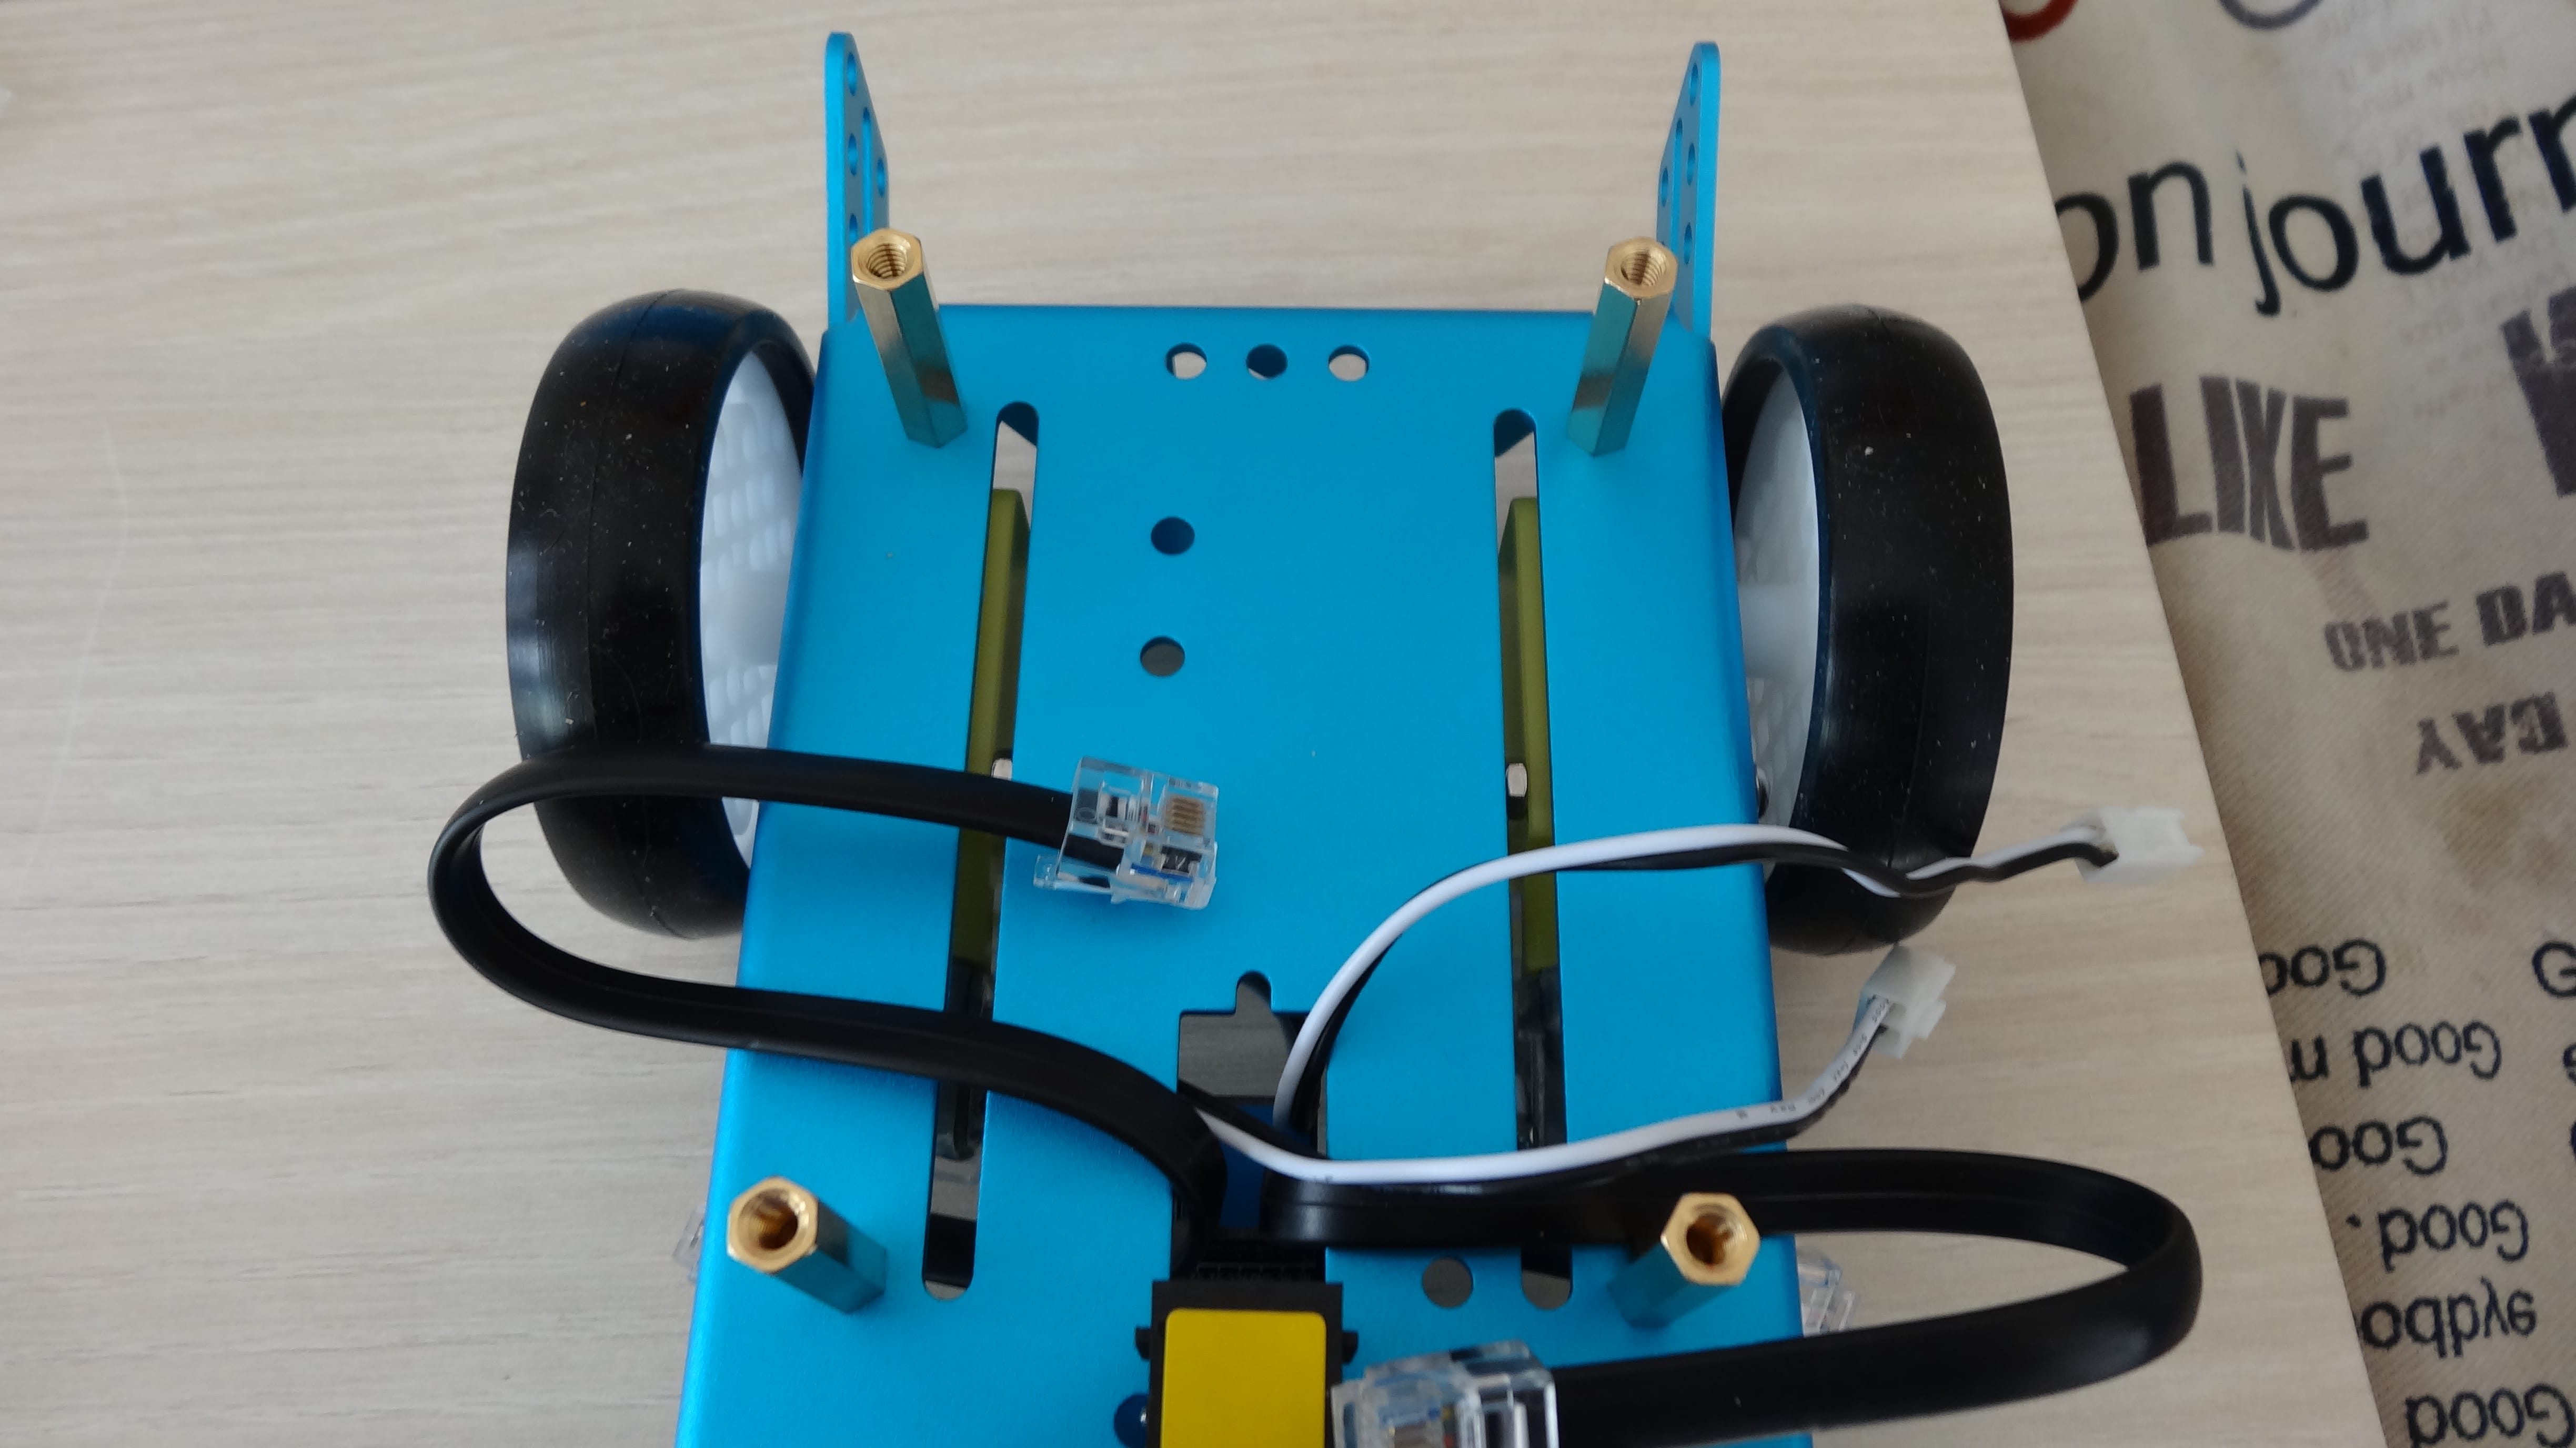 mbot-blue-un-robot-educatif-et-programmable-en-version-2-4-g-tres-interessant-legaragedupc-fr-27